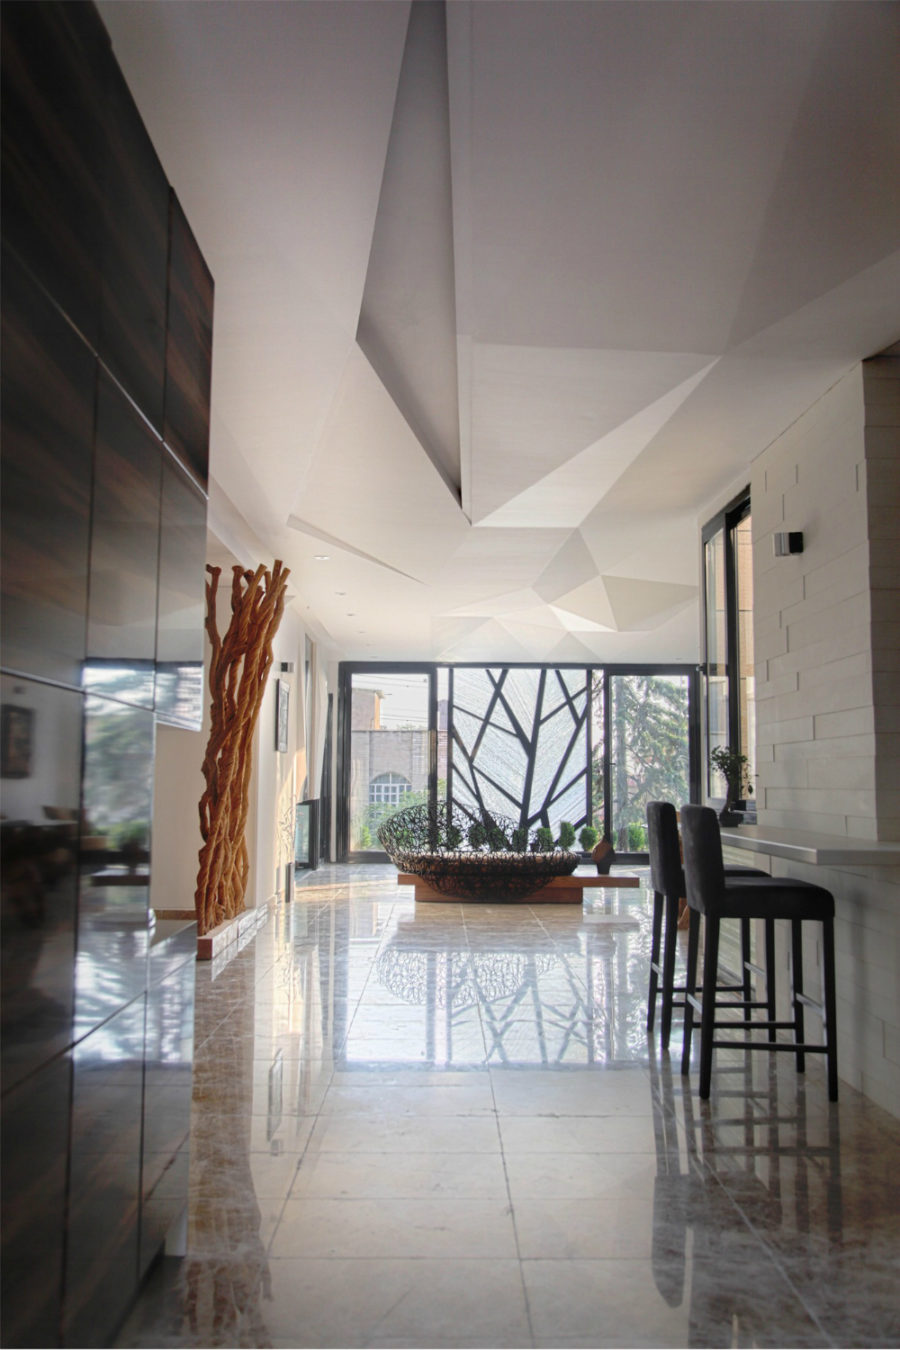 Danial公寓由Reza Sayadian和Sara Kalantary设计